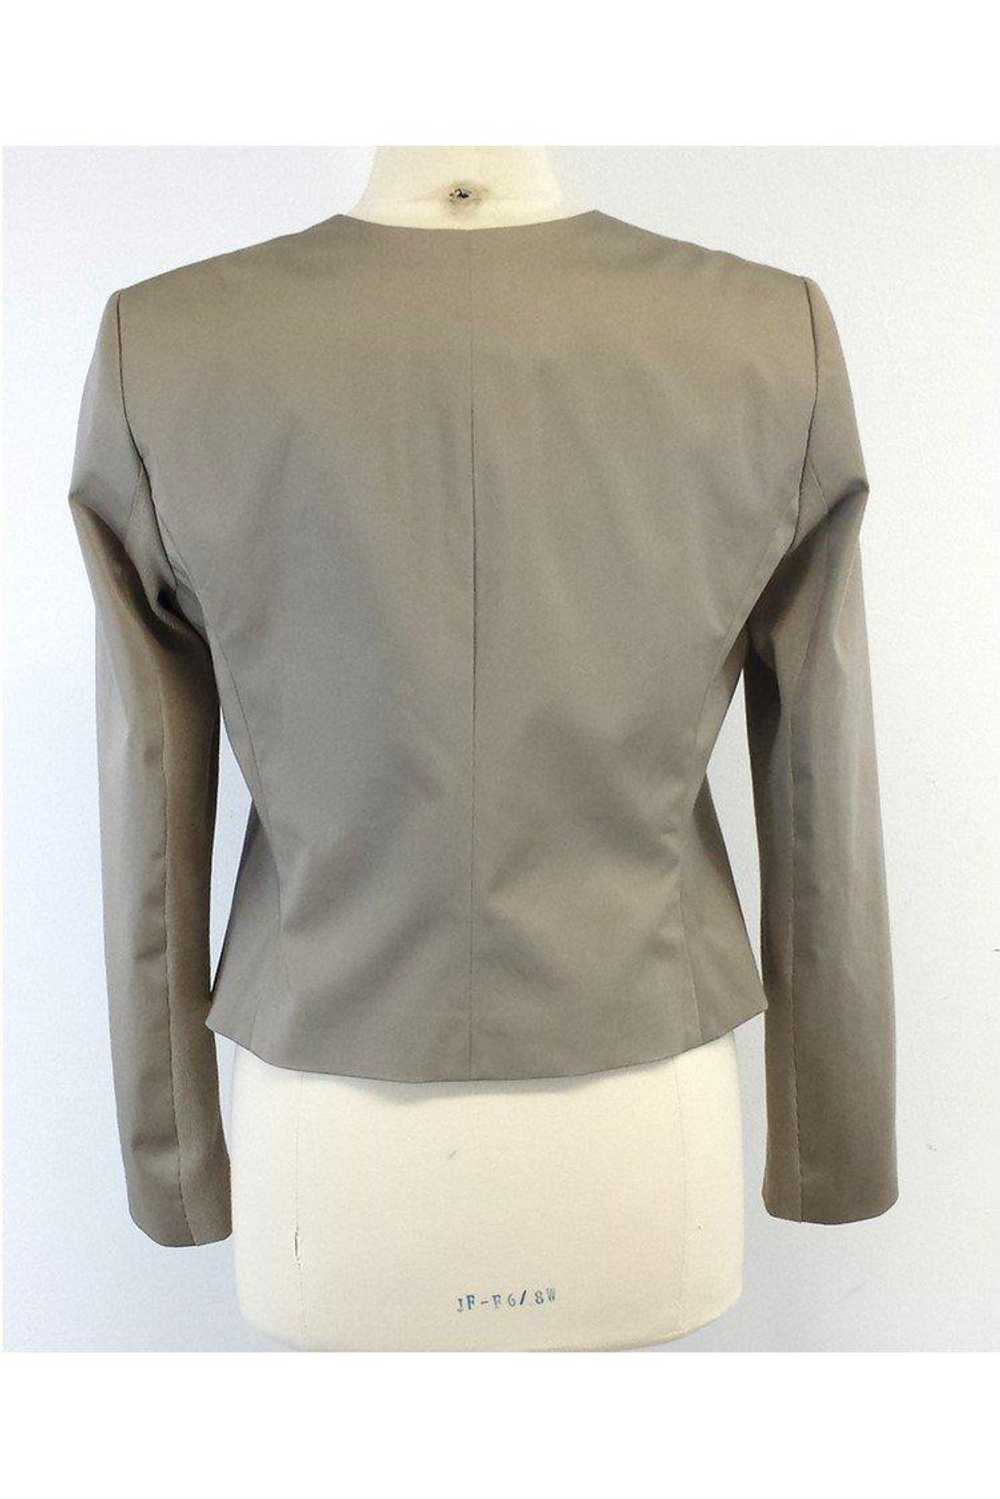 Iris Setlakwe - Beige Cotton & Leather Jacket Sz … - image 3